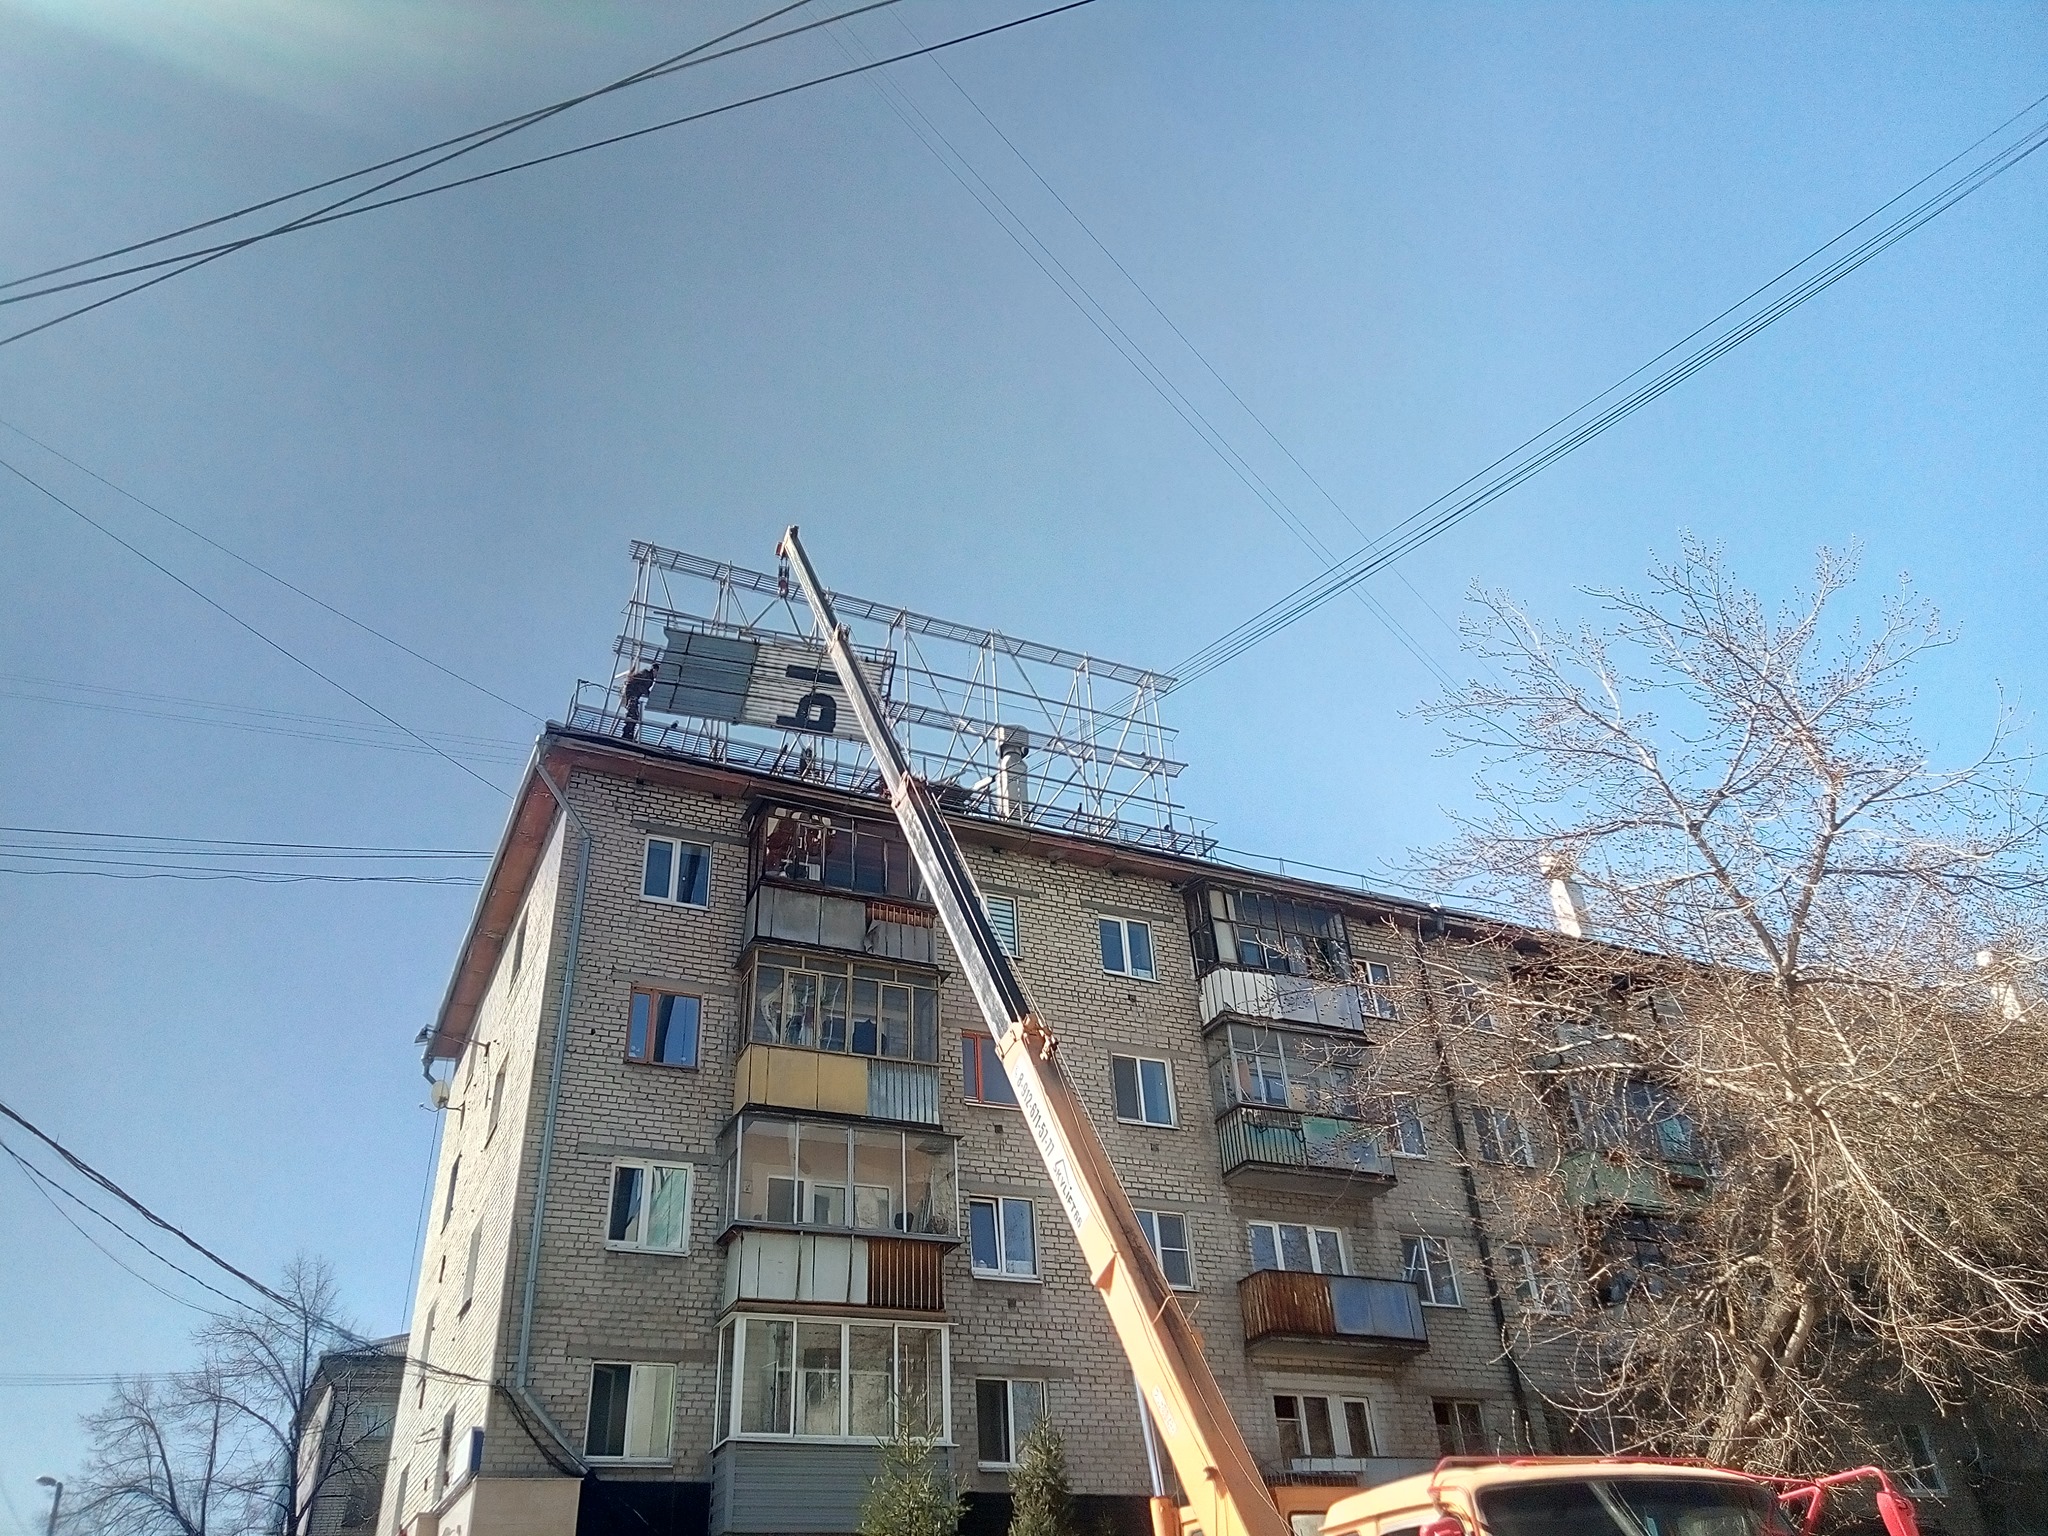 Мы больше не молоды. В Екатеринбурге с крыши дома срезали известное послание Тимы Ради